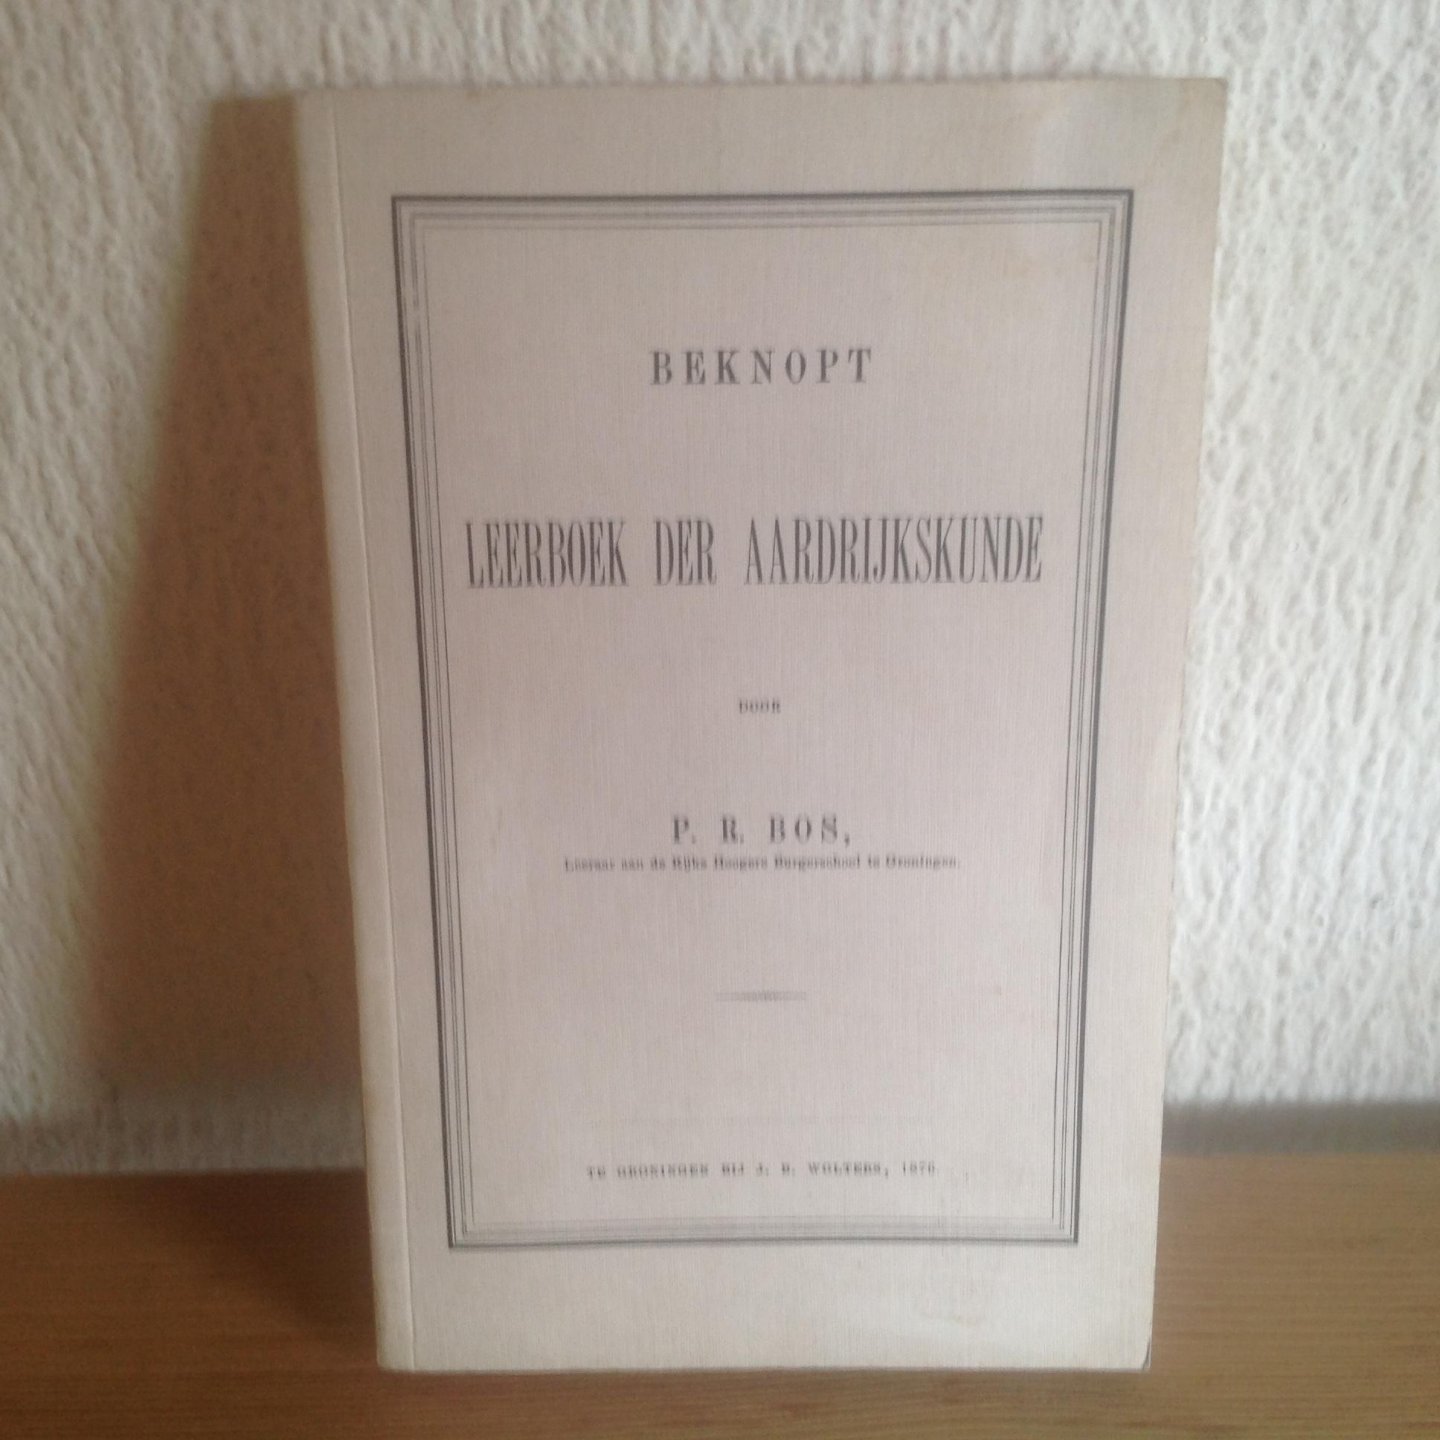 P R Bos - Beknopt LEERBOEK DER AARDRIJKSKUND 1876